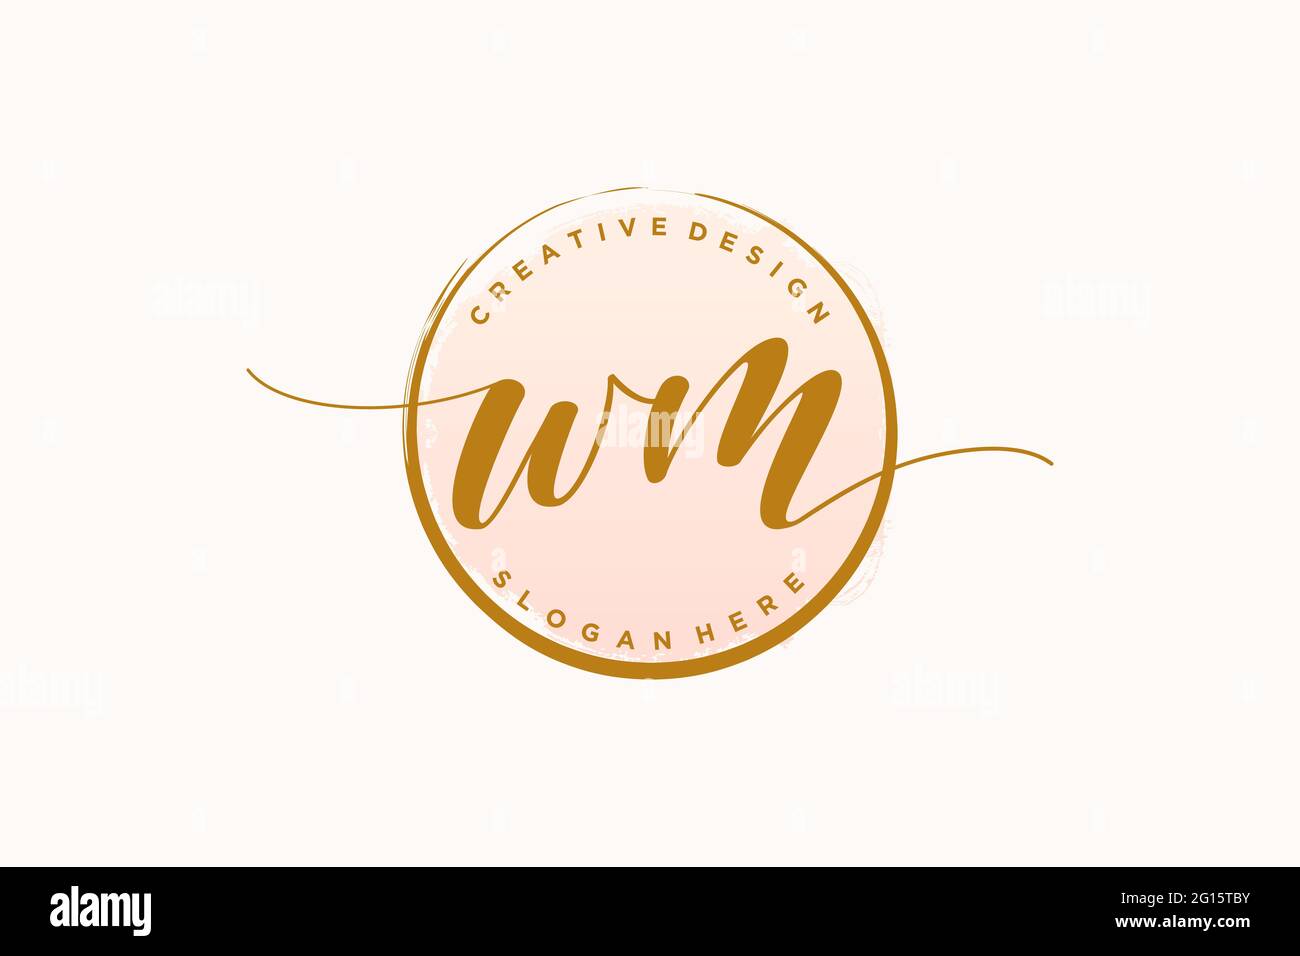 WM-Handschrift-Logo mit Kreis Vorlage Vektor Signatur, Hochzeit, Mode, Blumen und botanische mit kreativen Vorlage. Stock Vektor